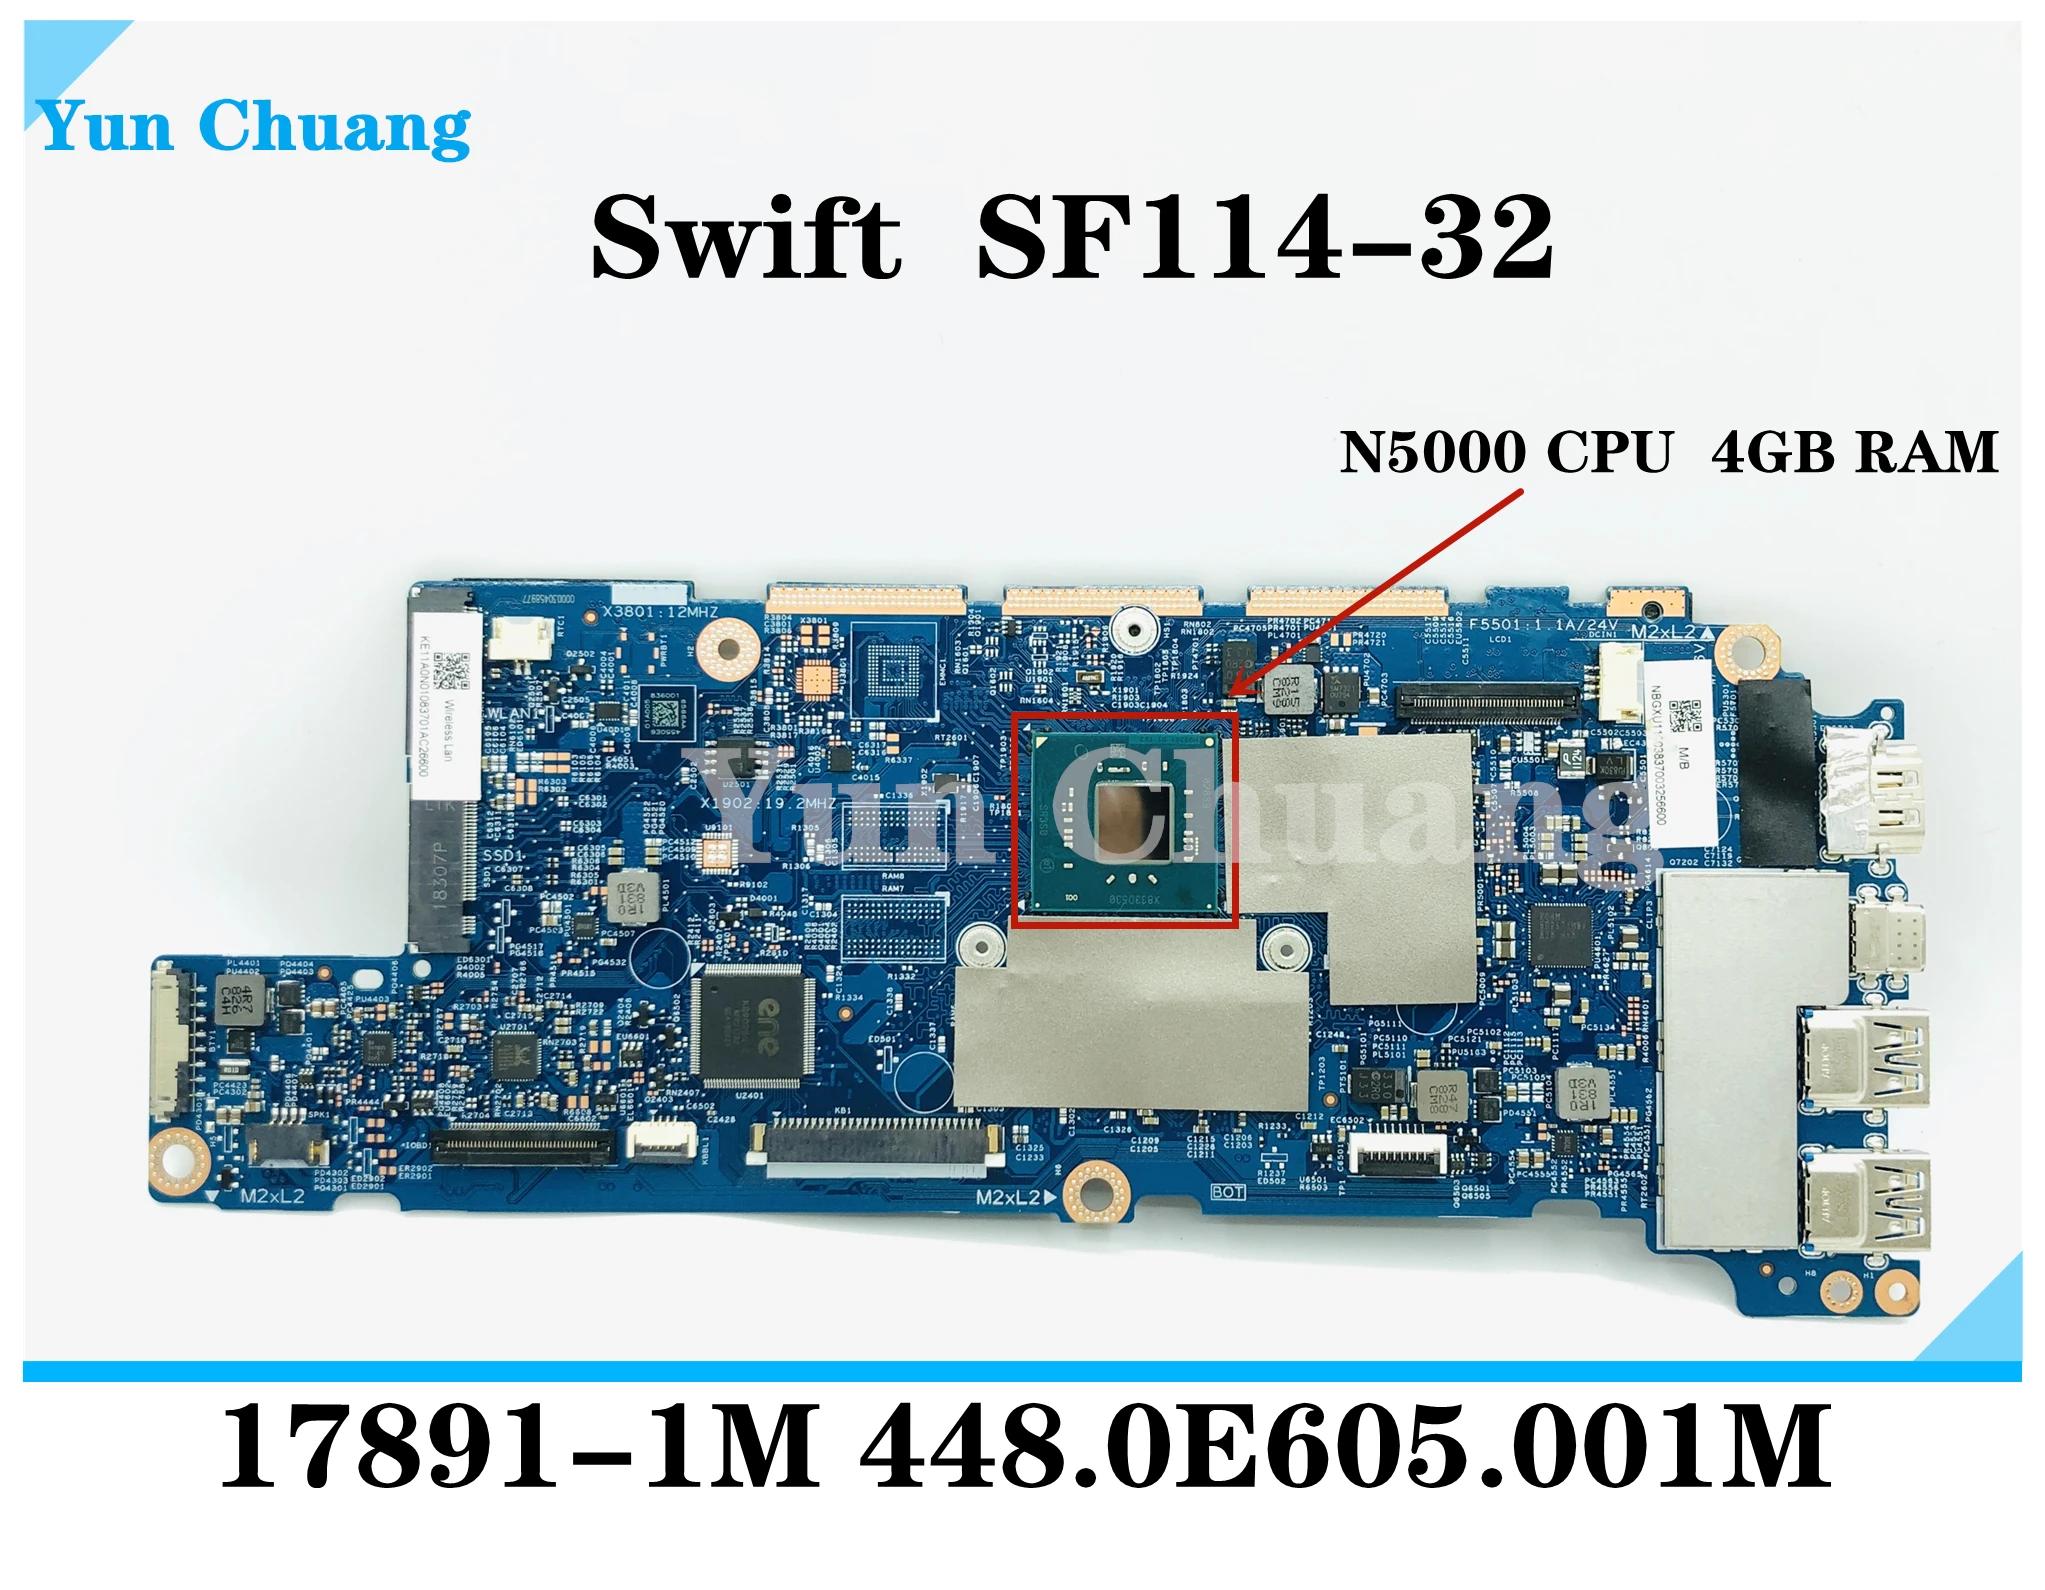 Acer Swift SF114-32 14 ġ Ʈ   N5000 CPU 4G RAM NBGXU11003 NB.GXU11.003 17891-1M 448.0E605.001M